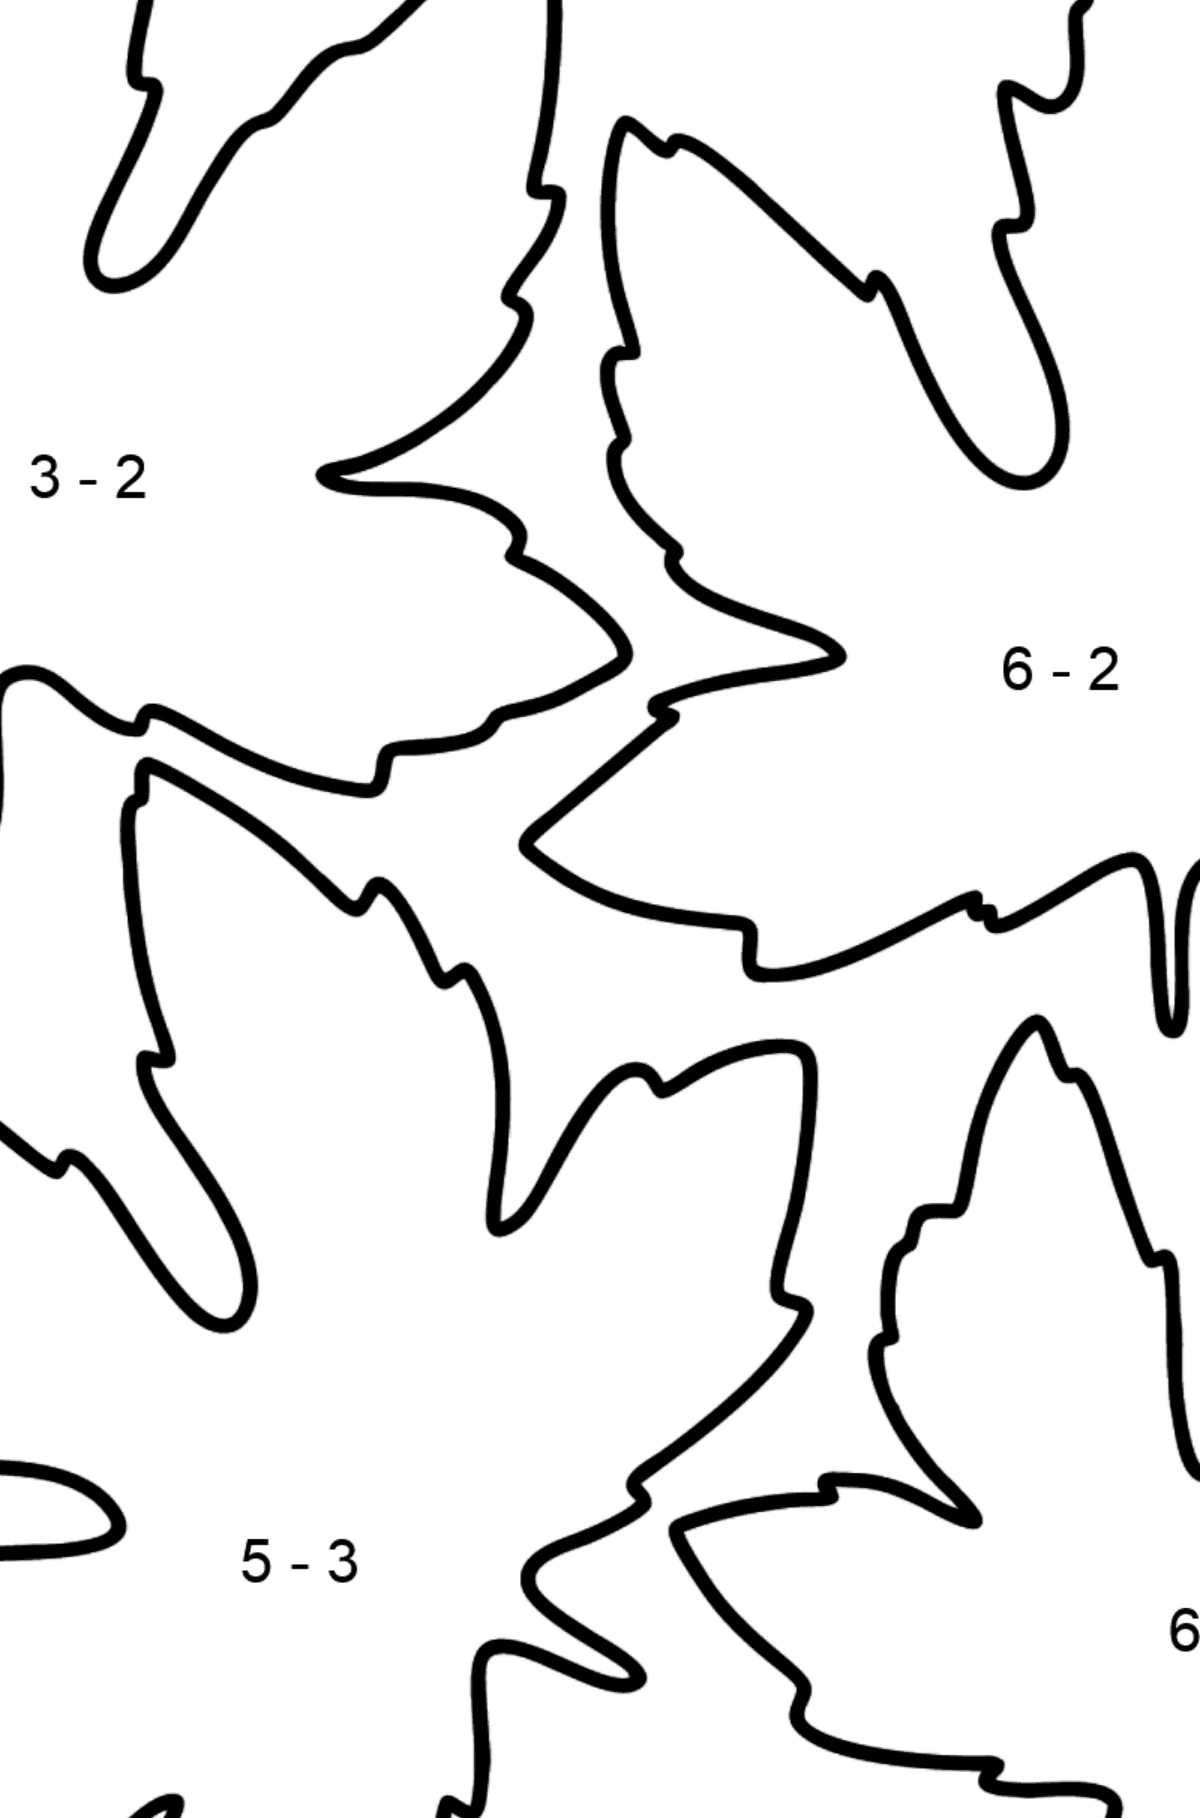 Desenho para colorir de Maple Leaves - Colorindo com Matemática - Subtração para Crianças